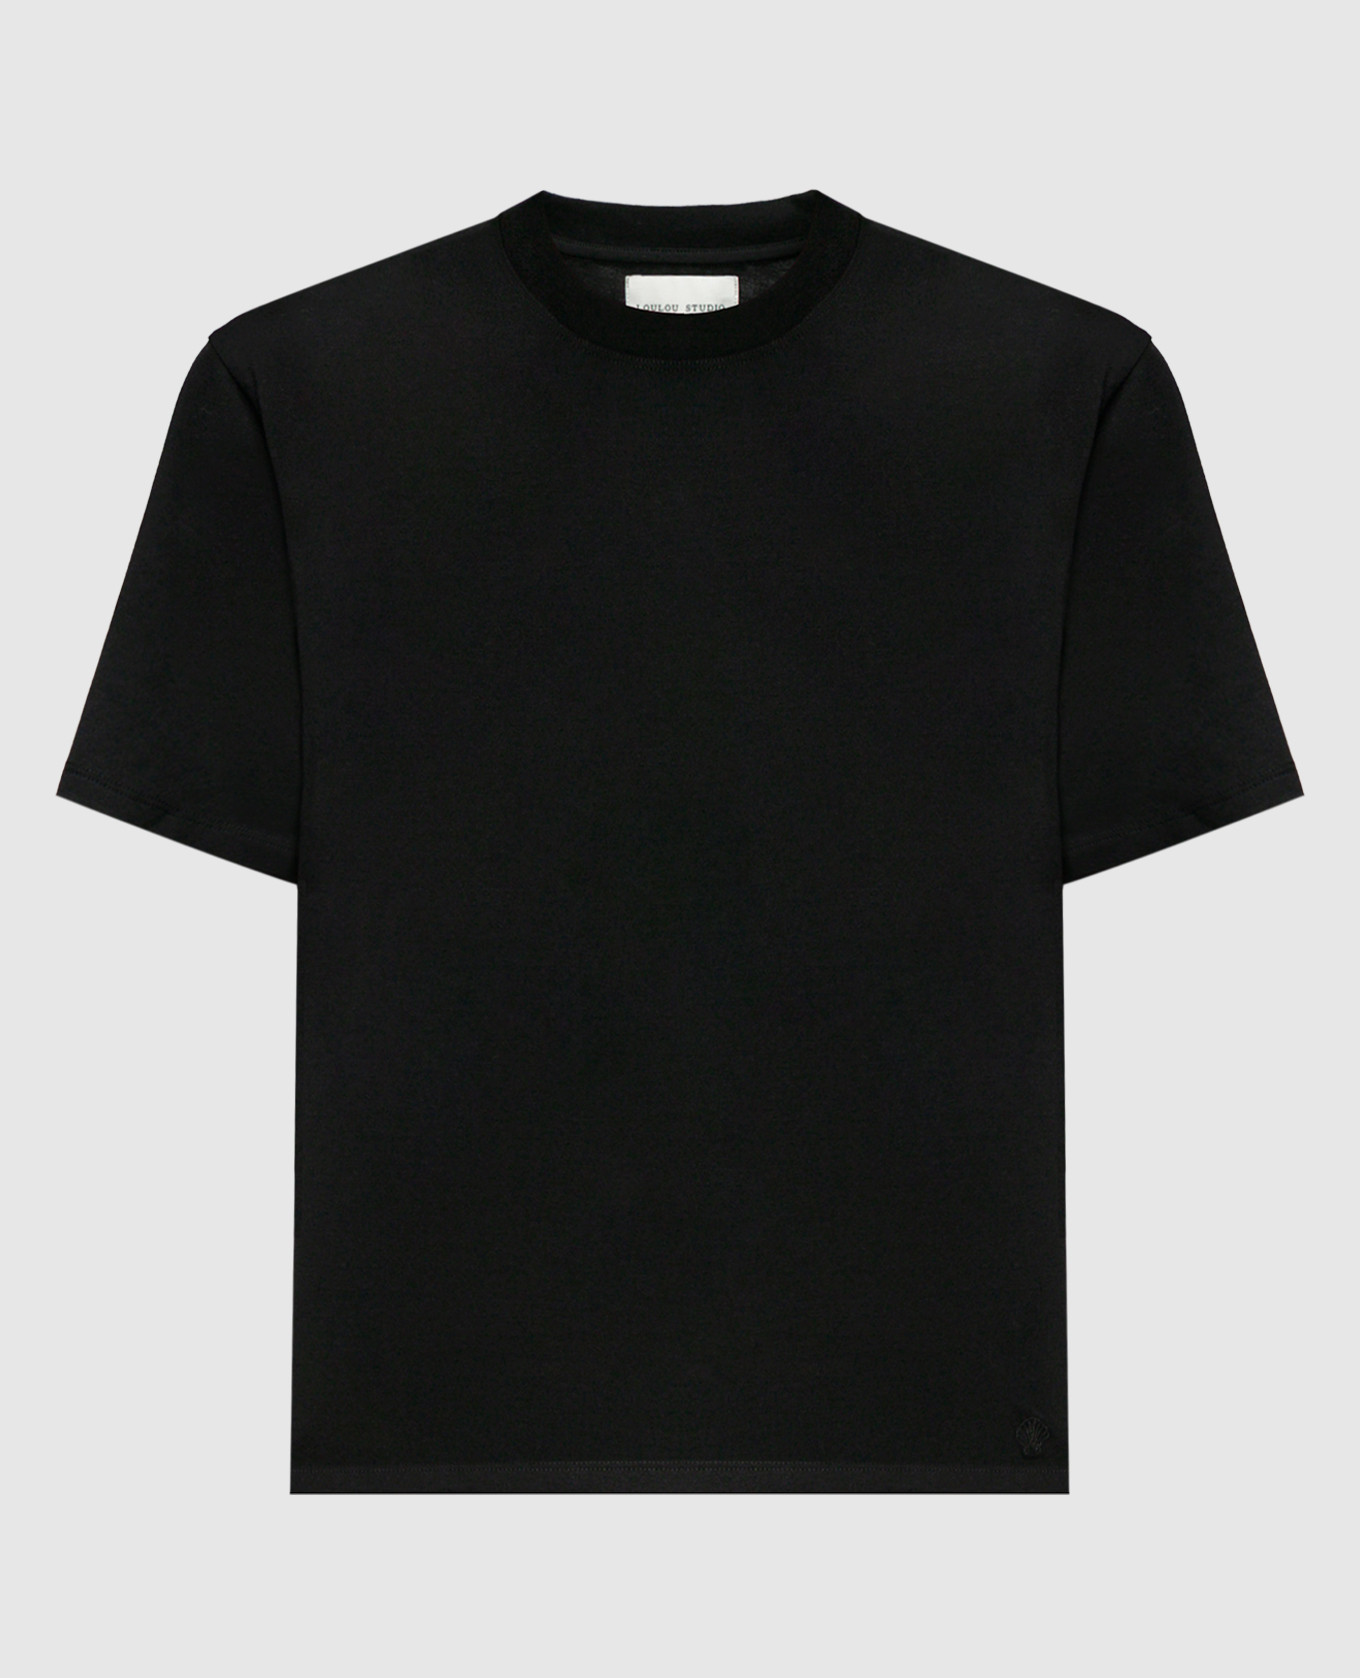 Telanto black t-shirt